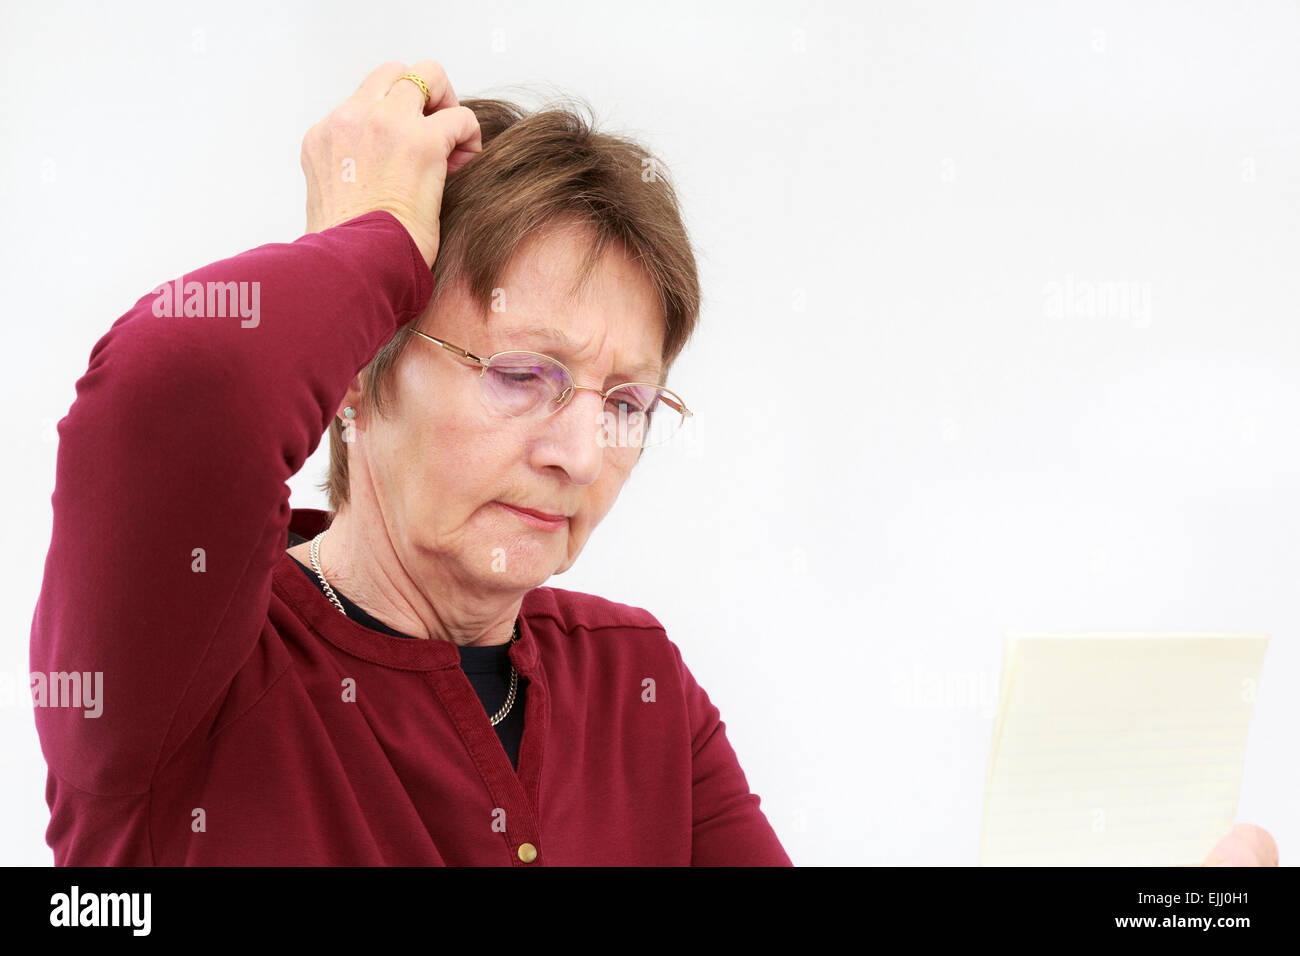 Une femme cadre supérieur concerné les rayures de sa tête tout en lisant une lettre qu'elle est tenue et la pensée. En Angleterre, Royaume-Uni, Angleterre Banque D'Images